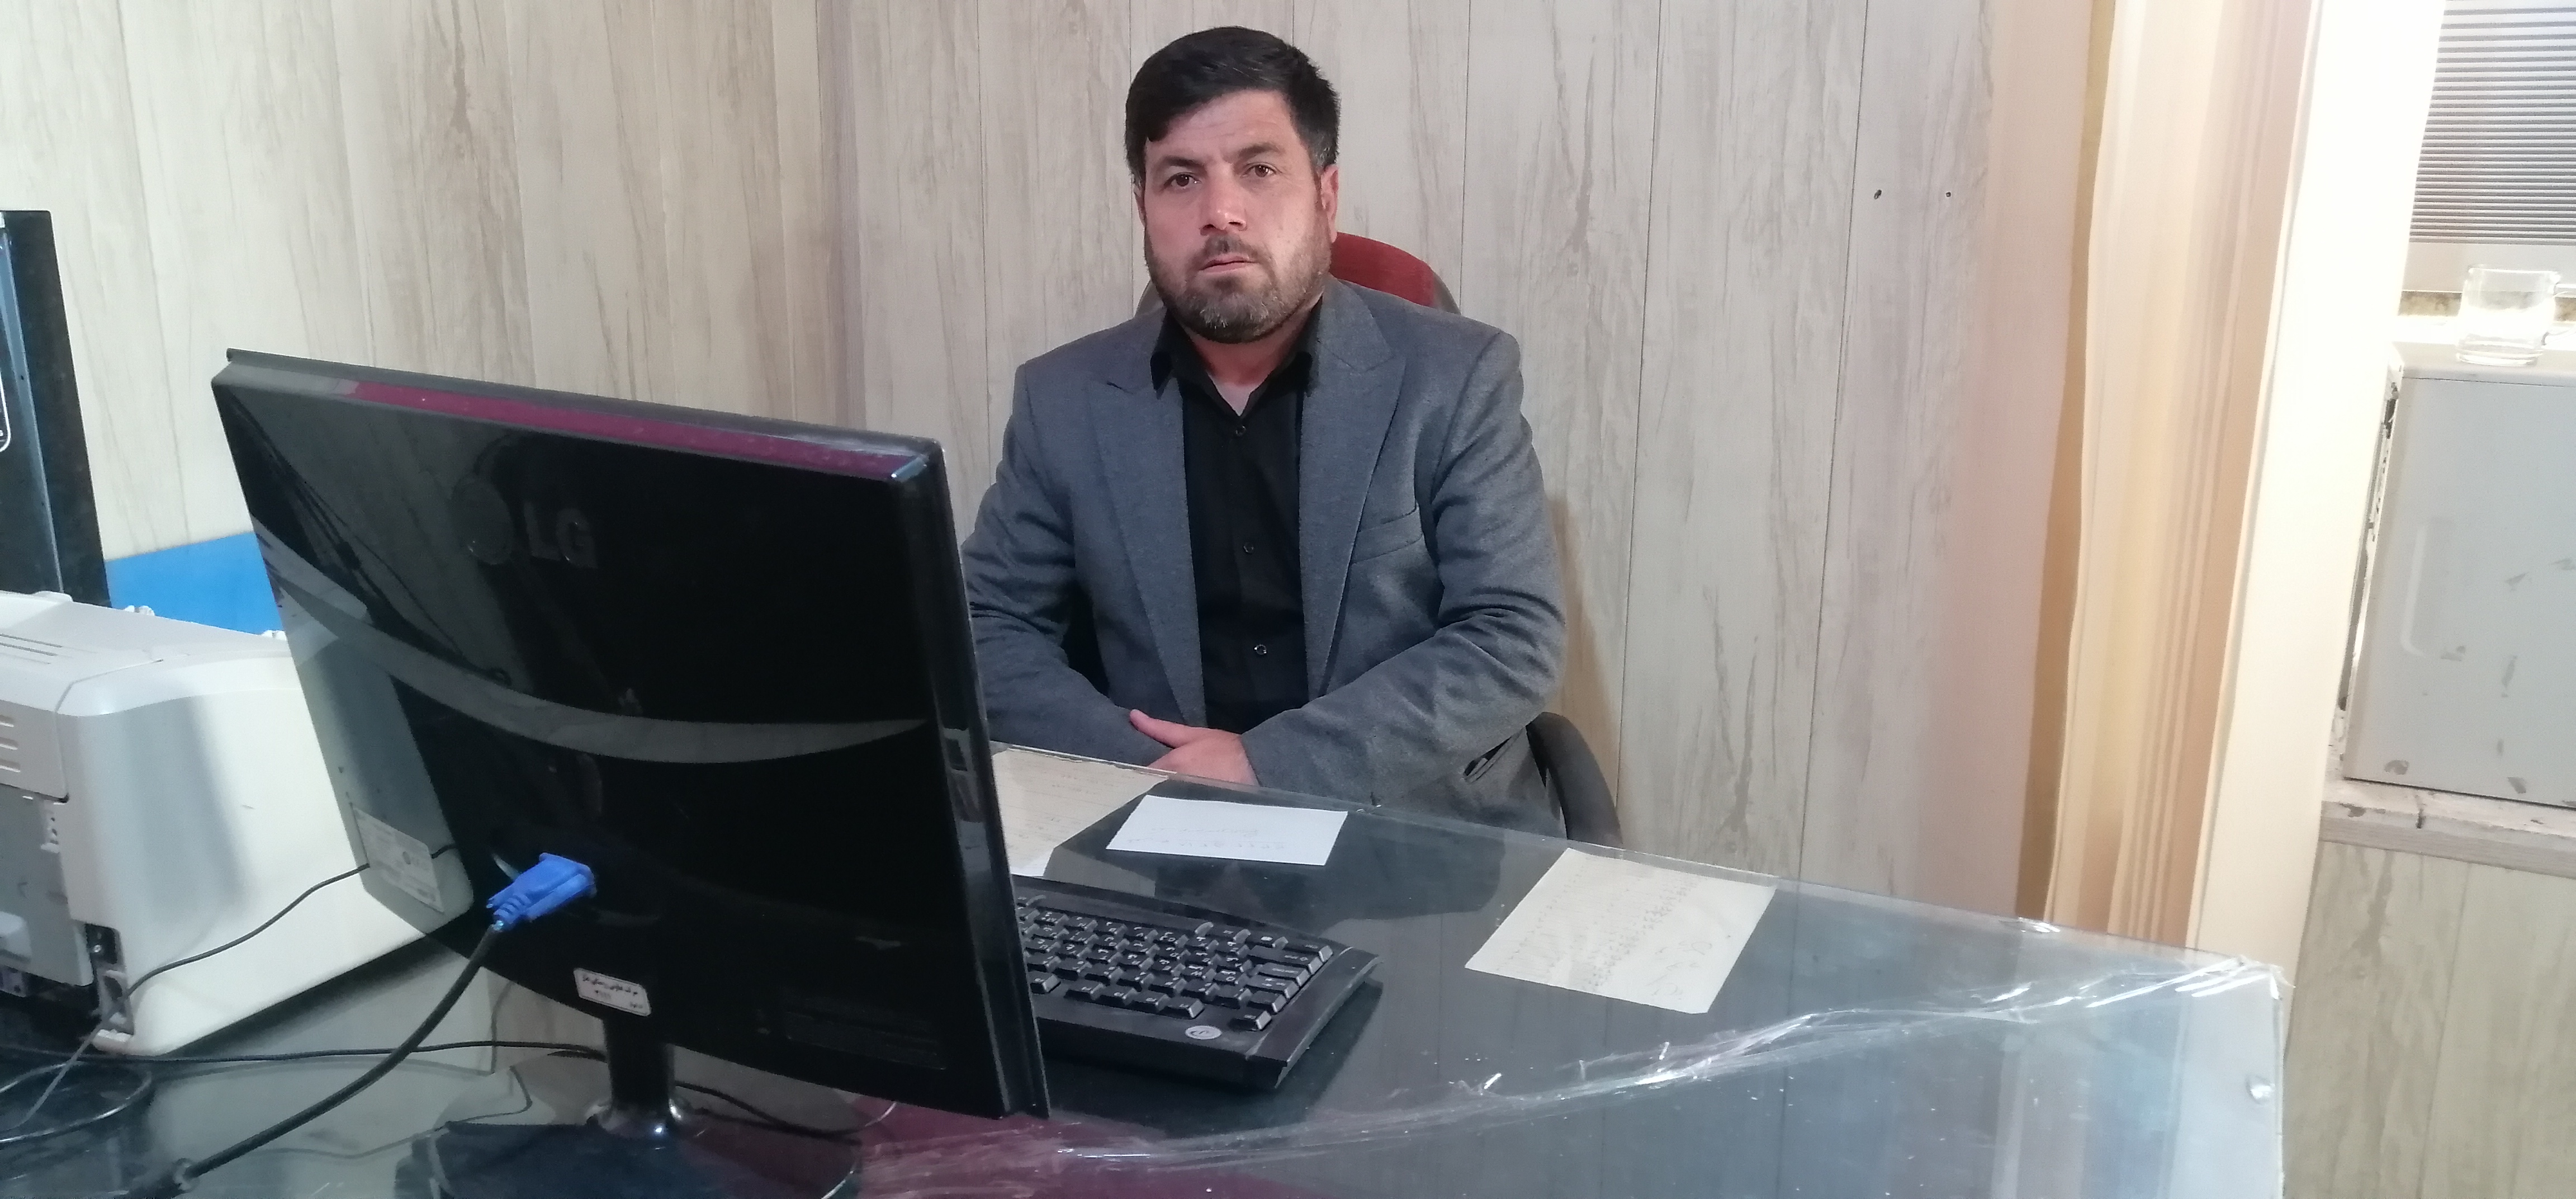 سجاد فرمهمدی بعنوان مدیر عامل اتحادیه شرکت های تعاونی روستایی مسجدسلیمان منصوب شد